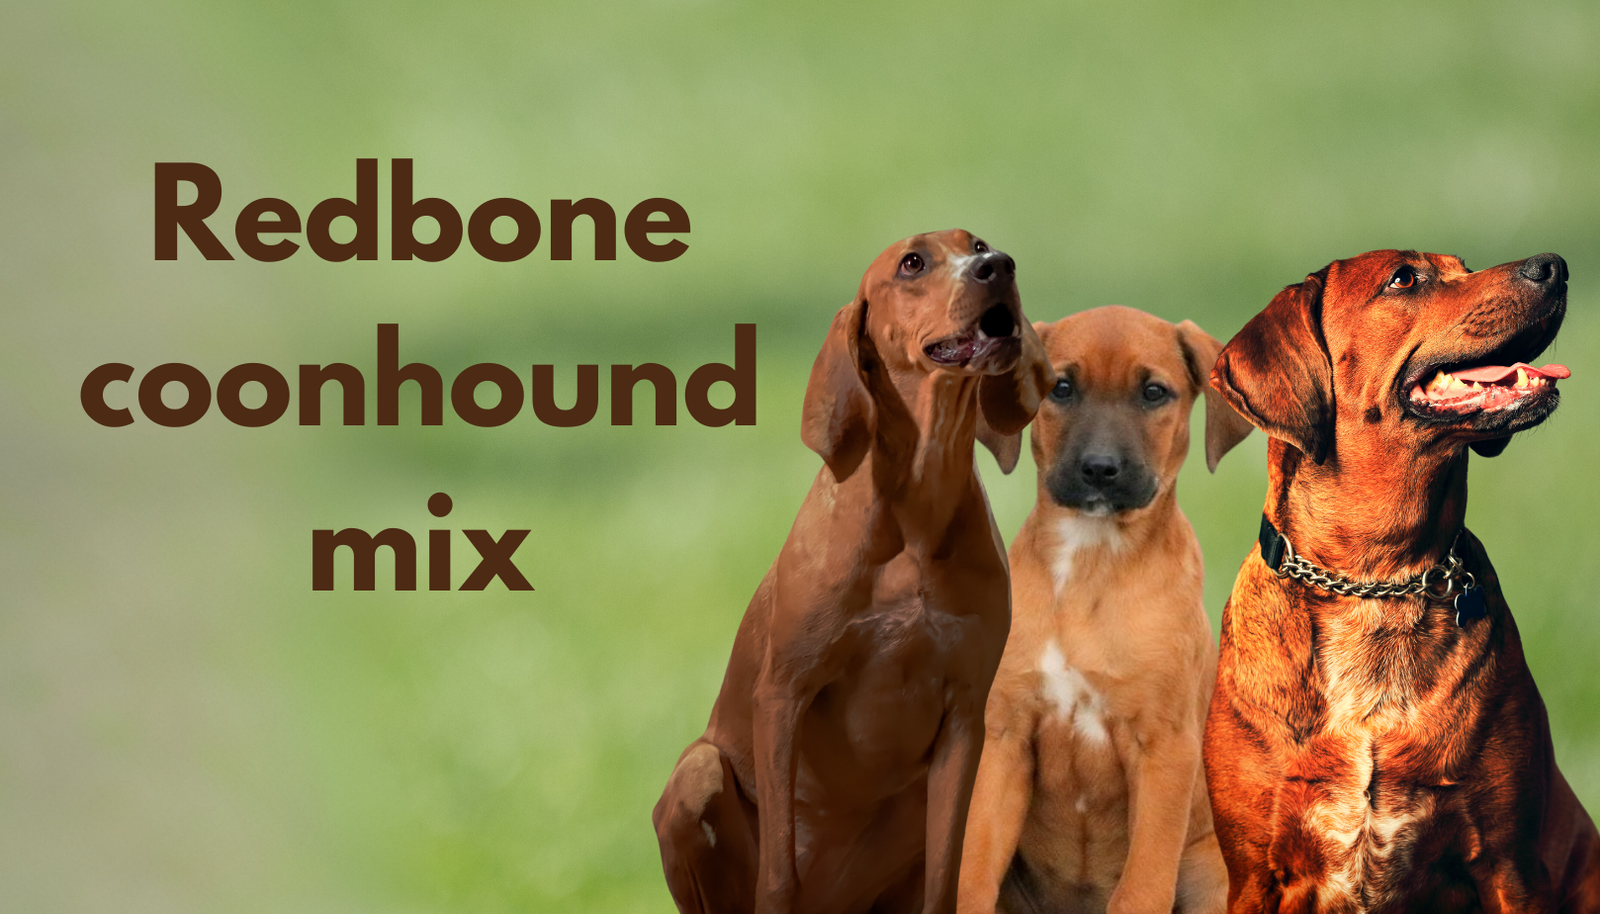 redbone coonhound mix